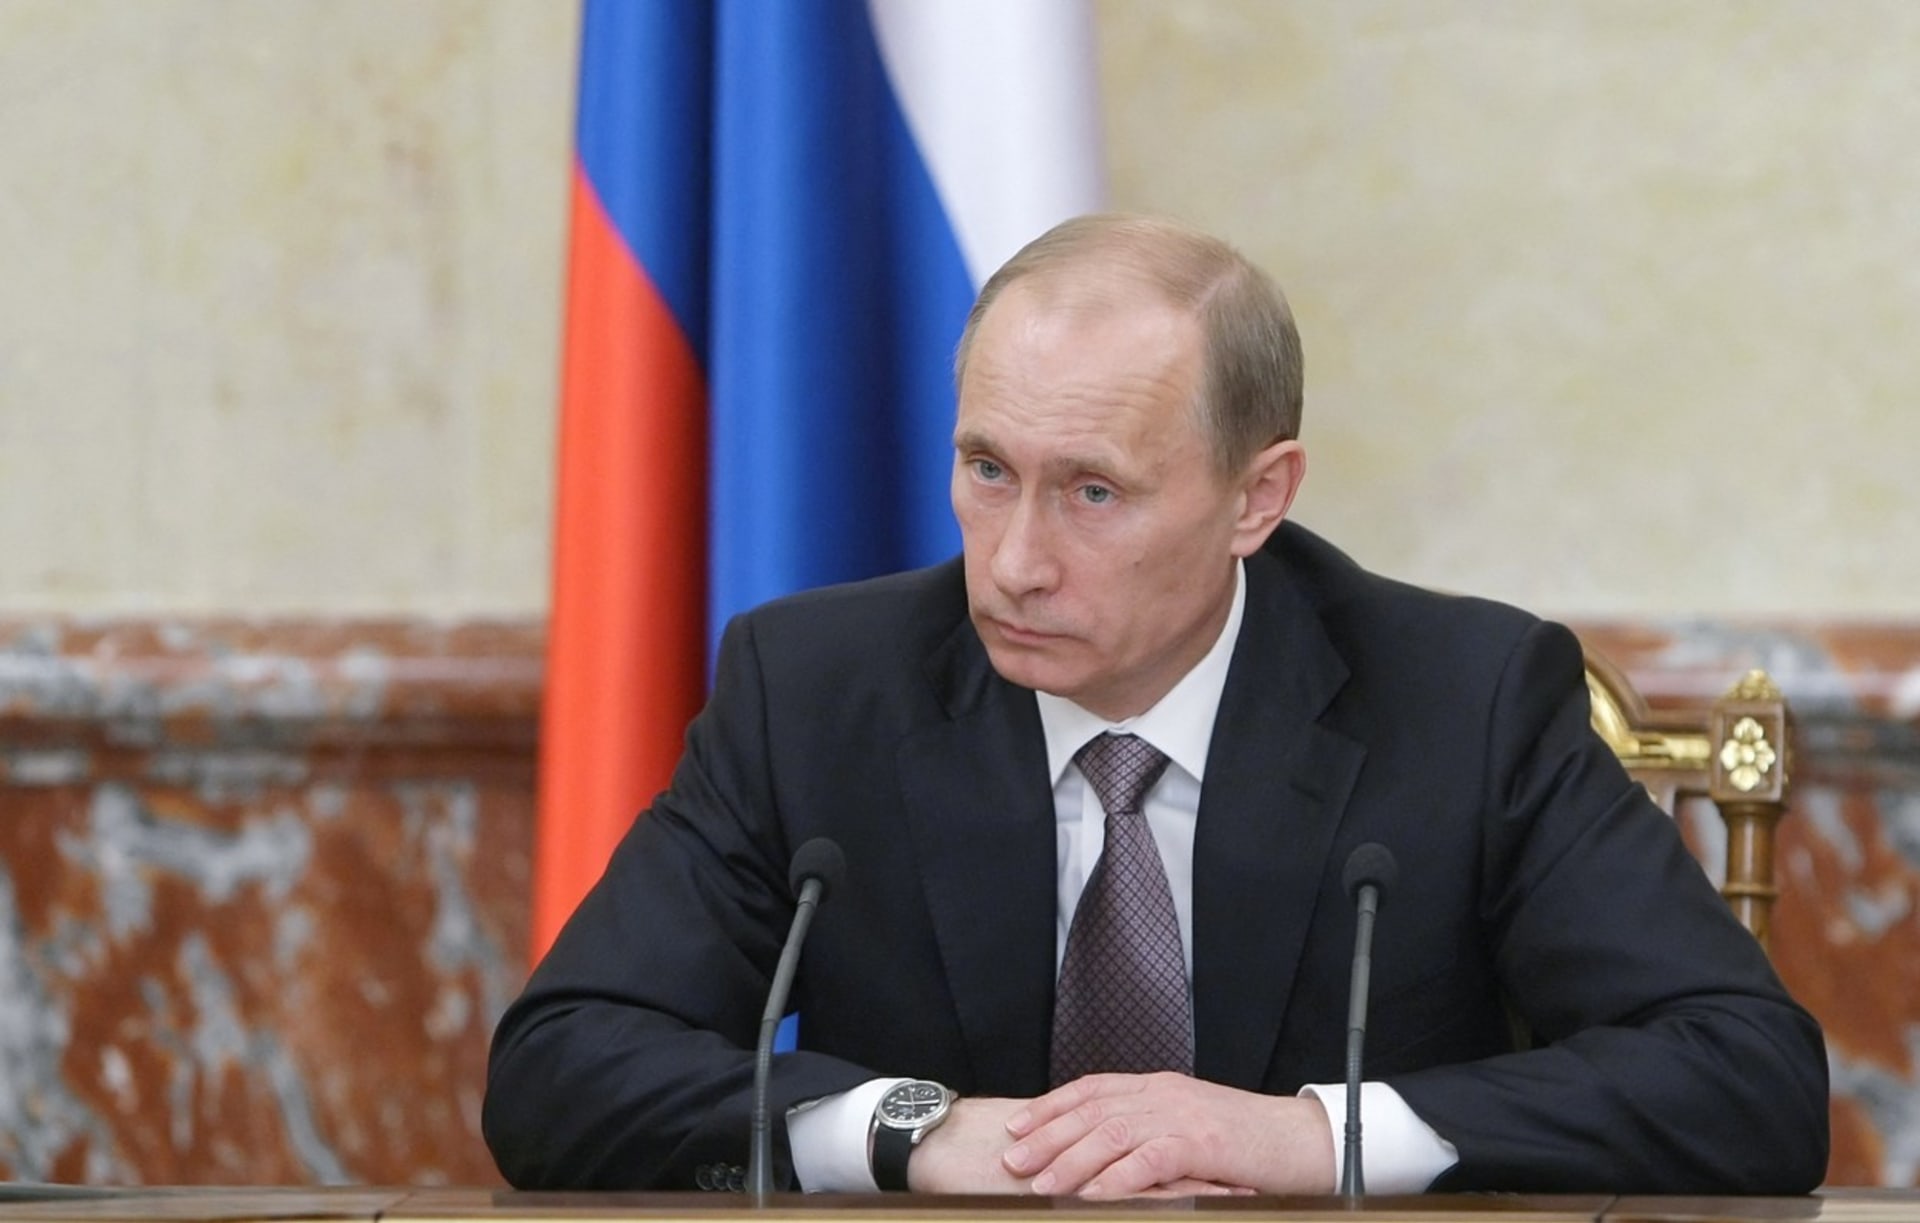 Vladimir Putin na snímku z roku 2010. Jeho tvář byla tehdy o poznání hubenější.